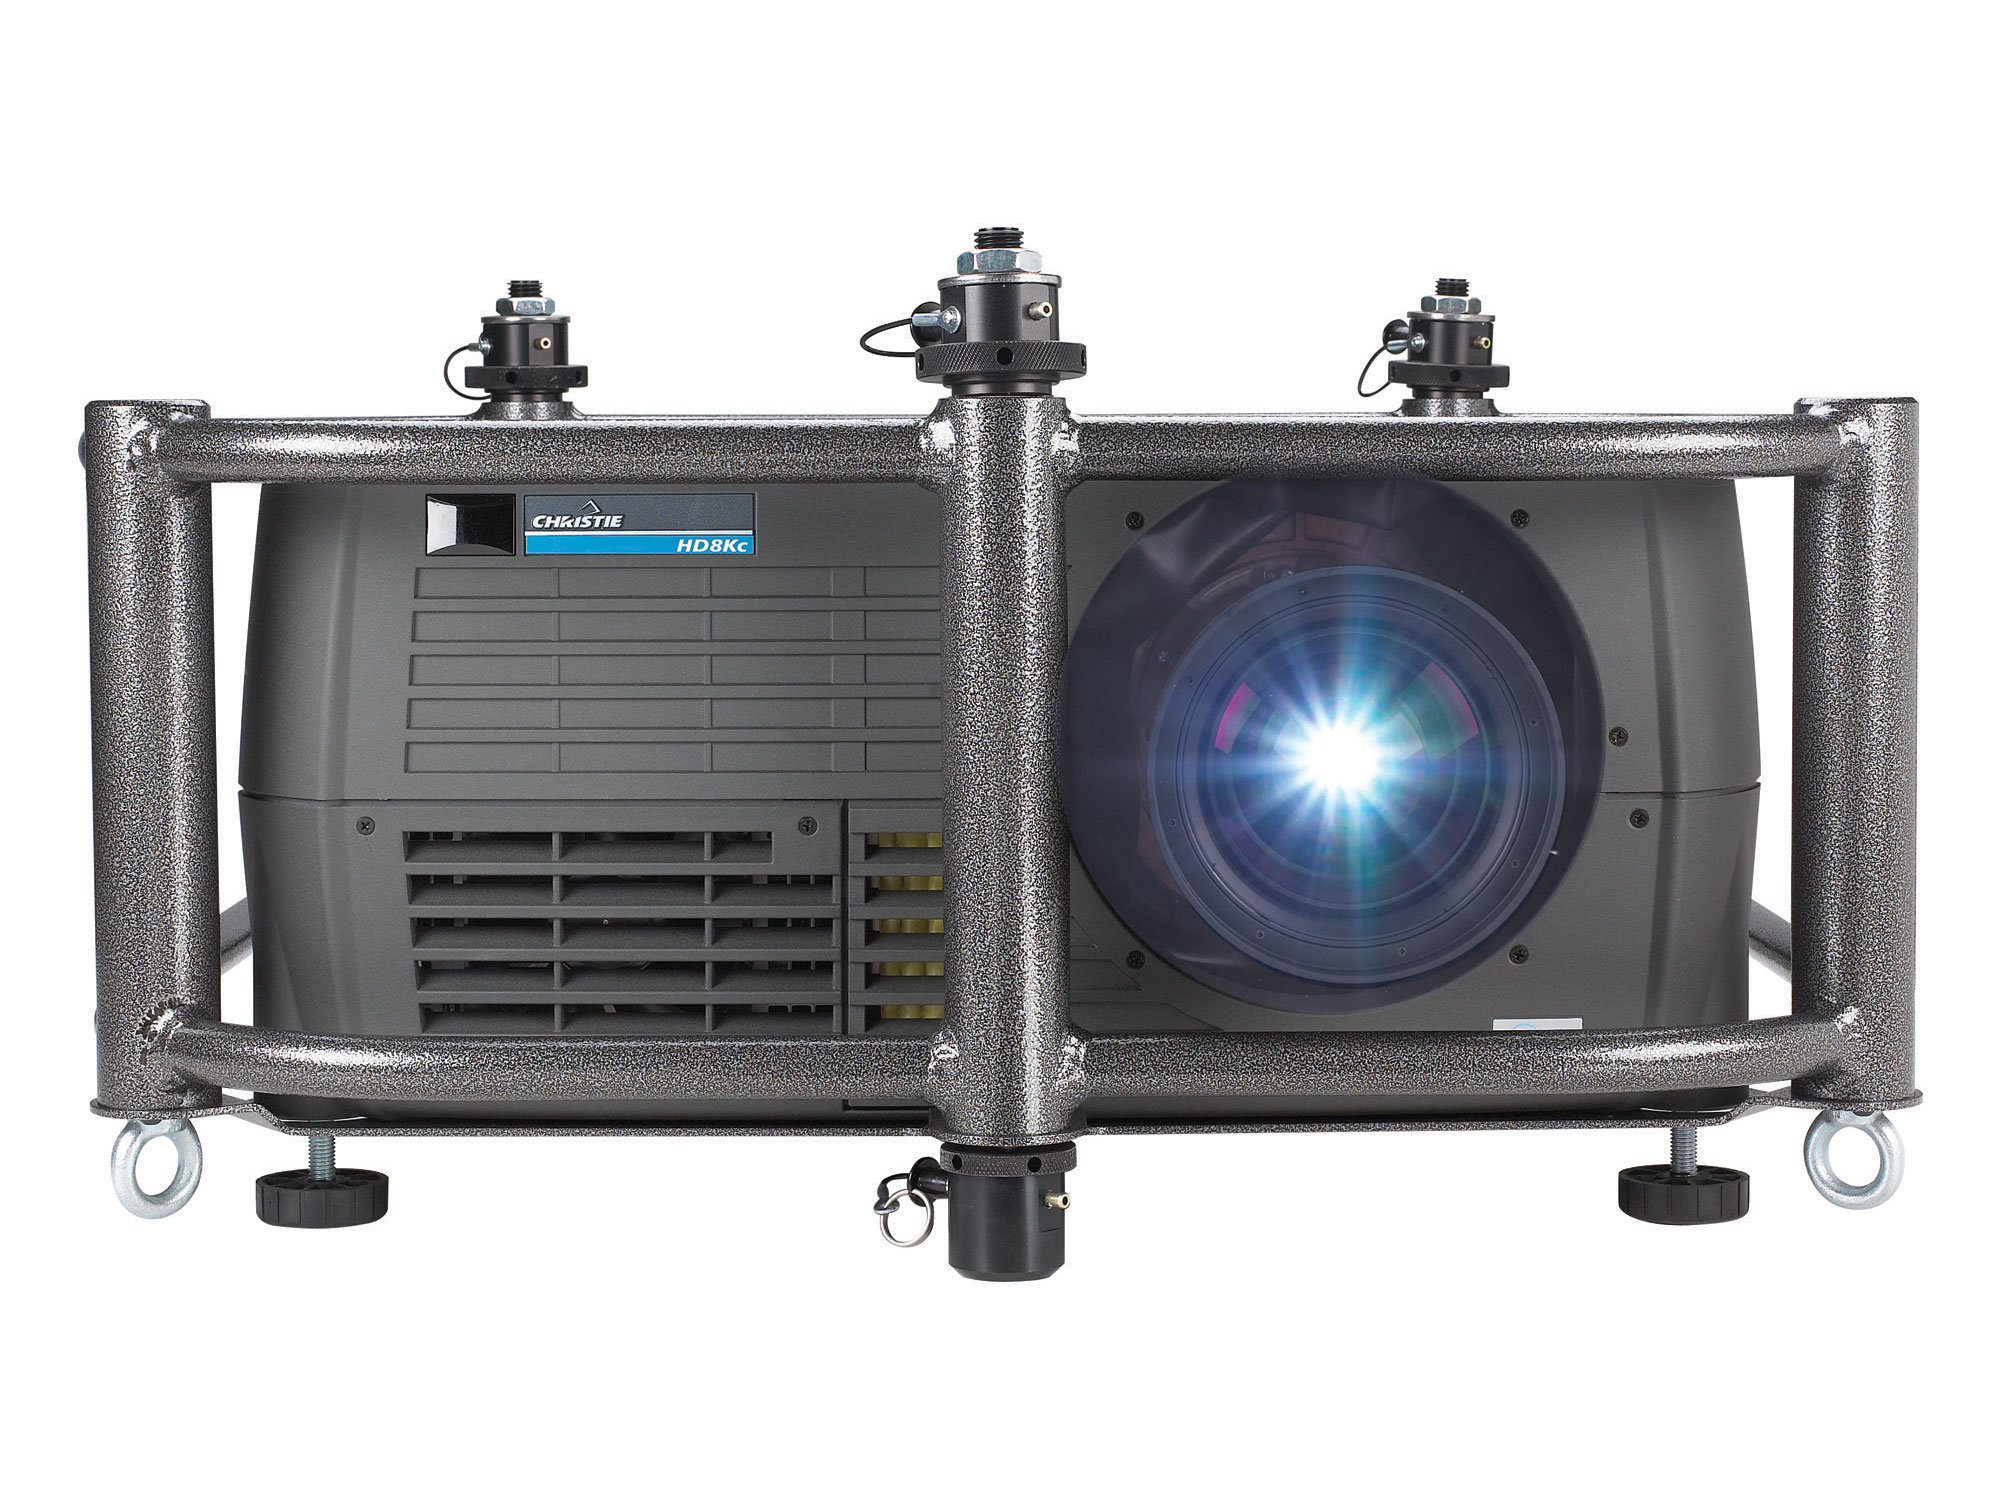 Roadie HD8Kc 3-chip DLP® projector | 104-018101-XX